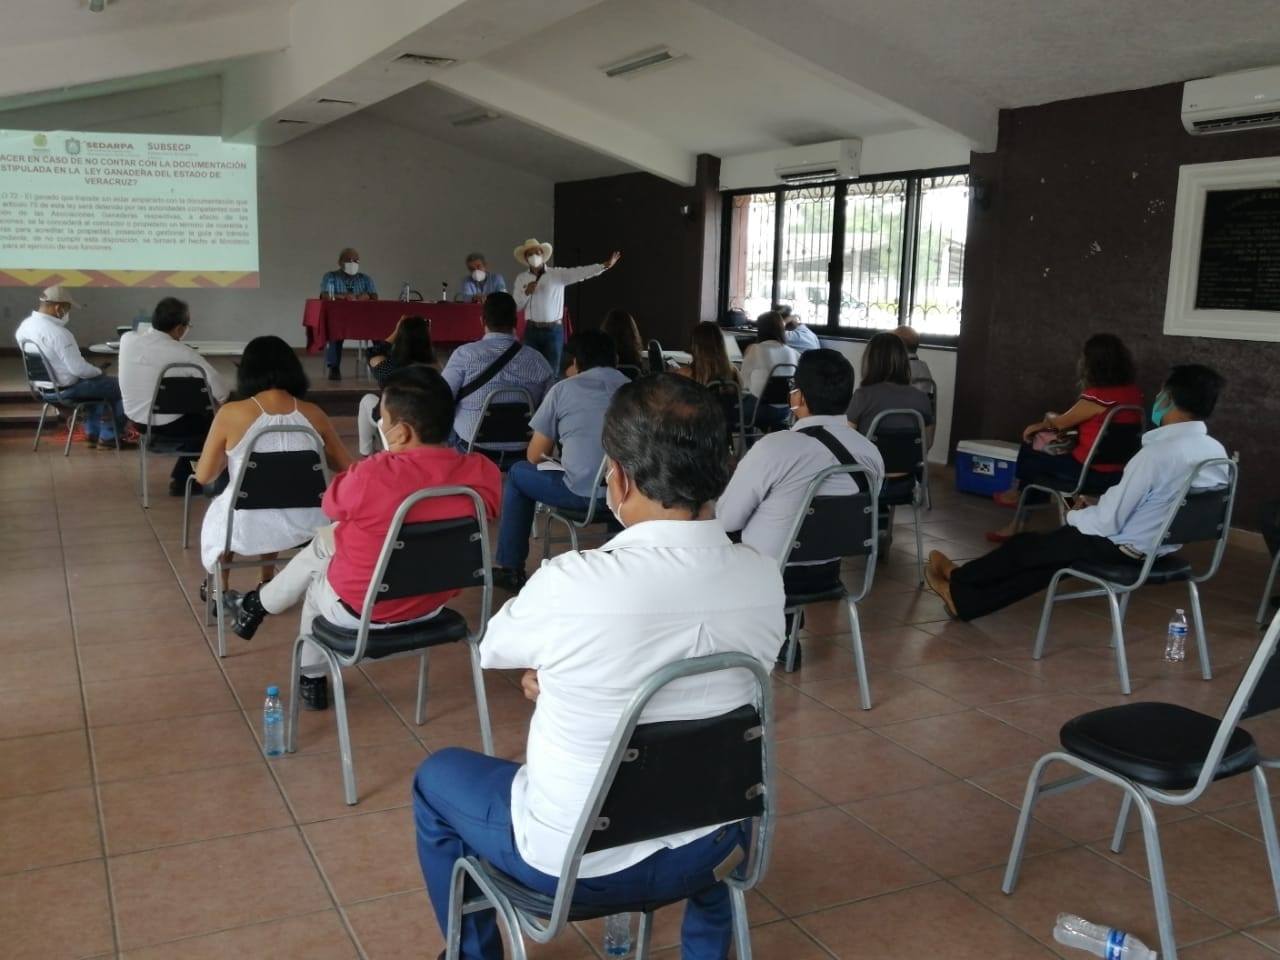 Subsecretaria de Ganaderia y Pesca Visita Tuxpan Veracruz.